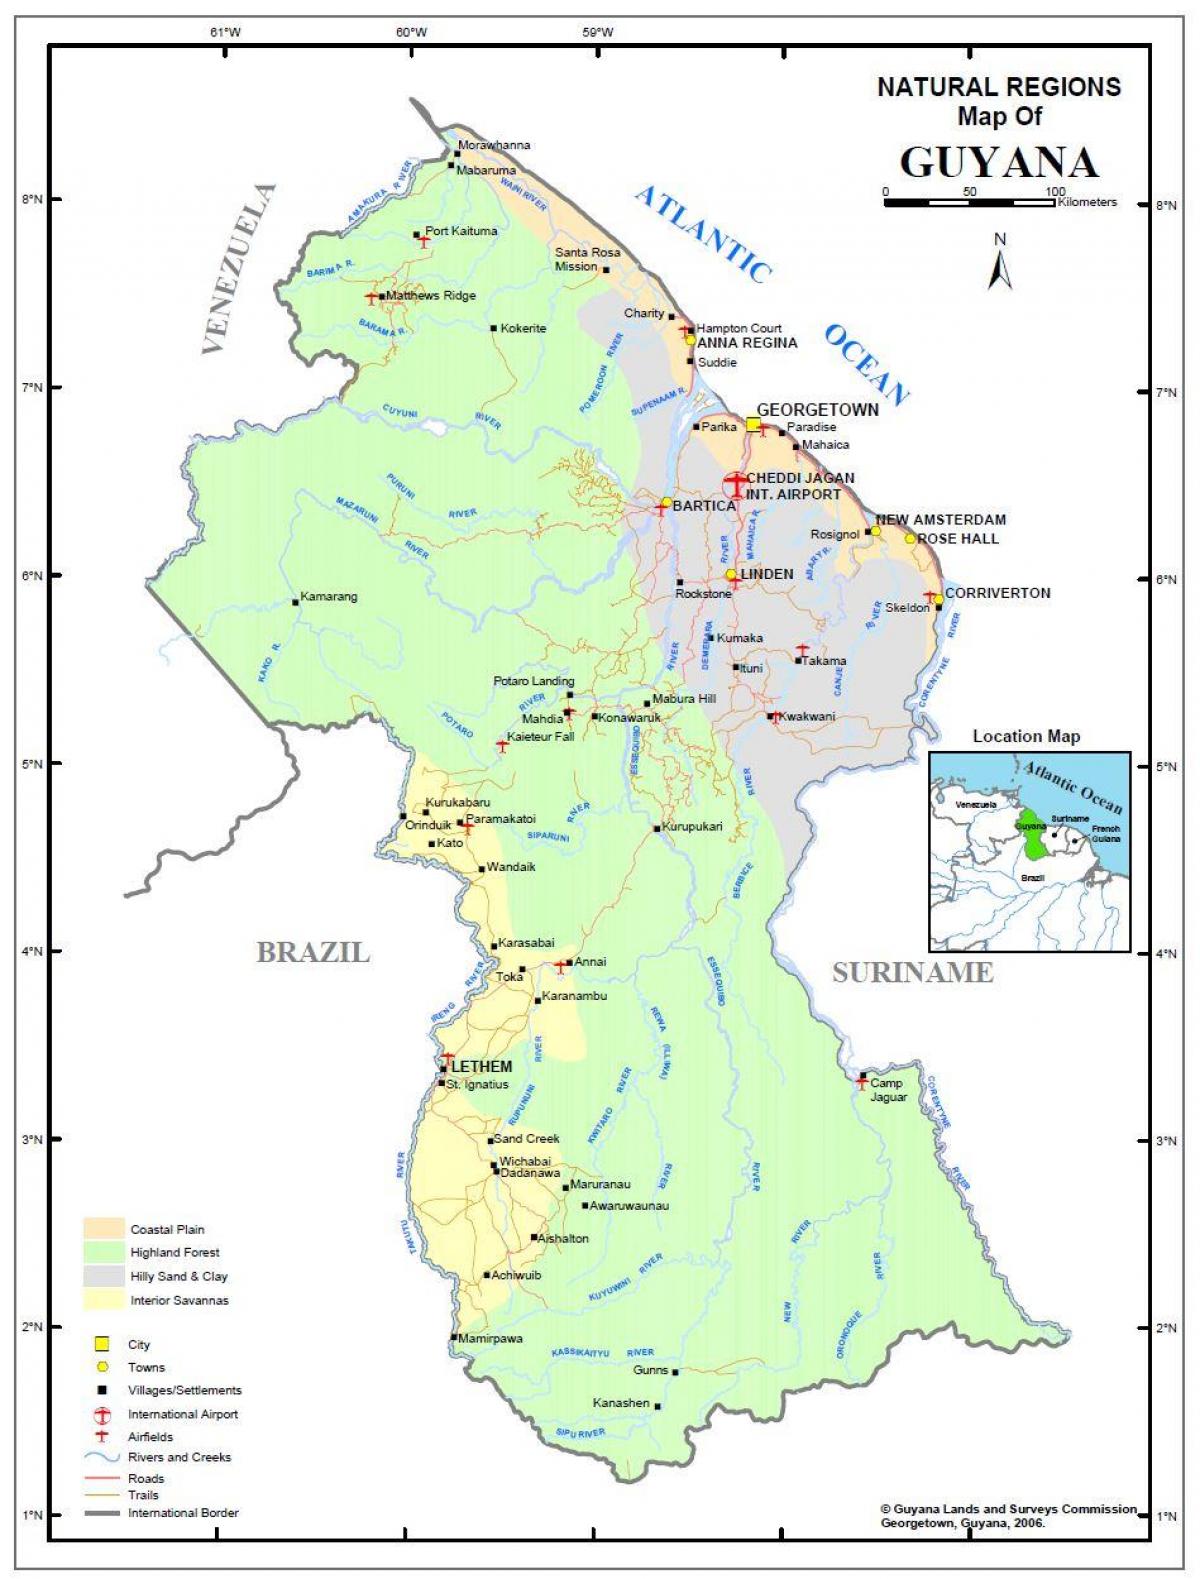 mapa de Guyana mostrando las 4 regiones naturales